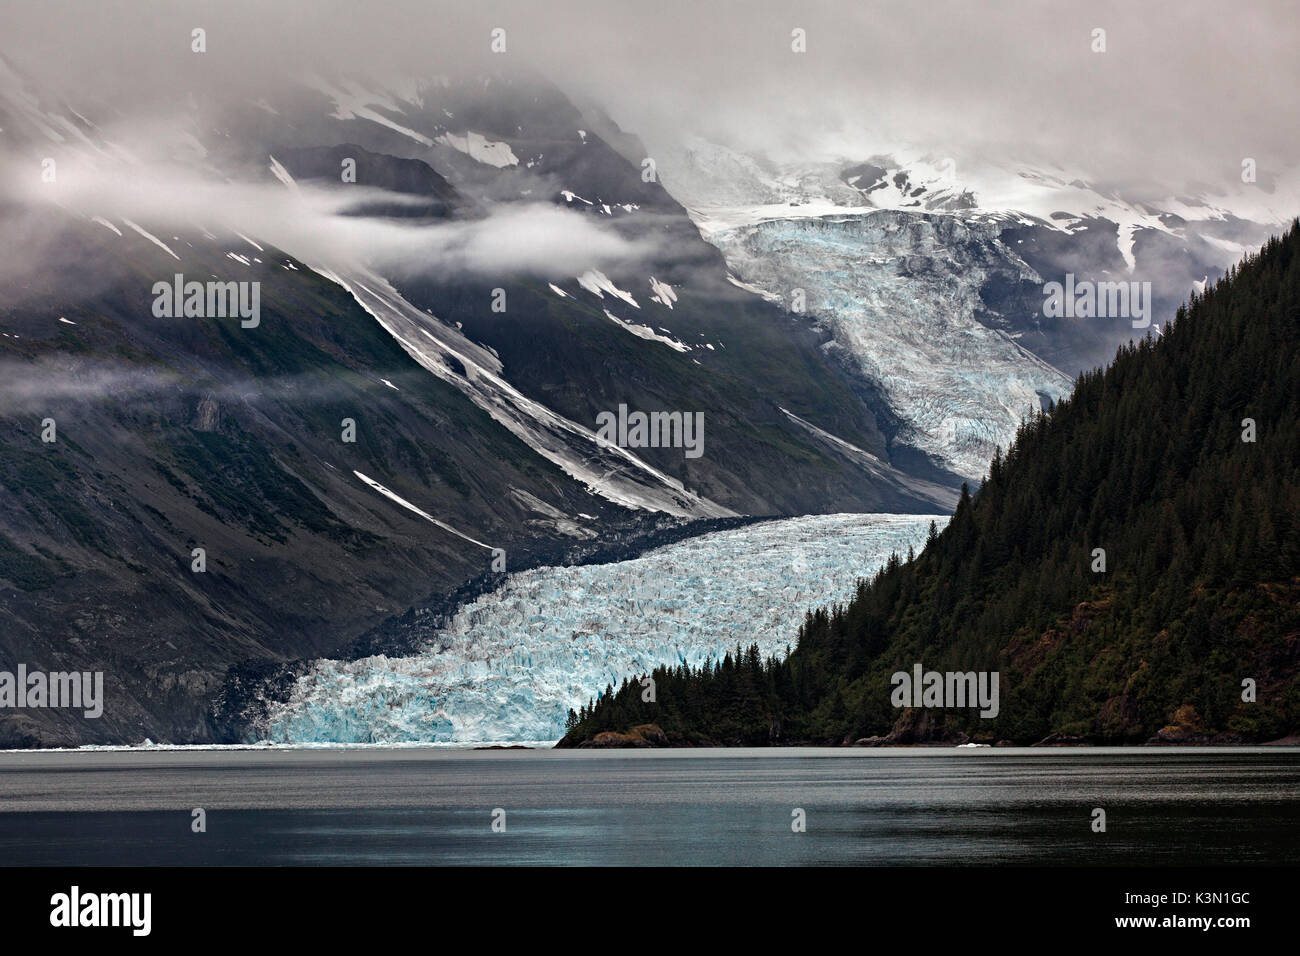 A tide water glacier in Prince William Sound, Alaska. Stock Photo